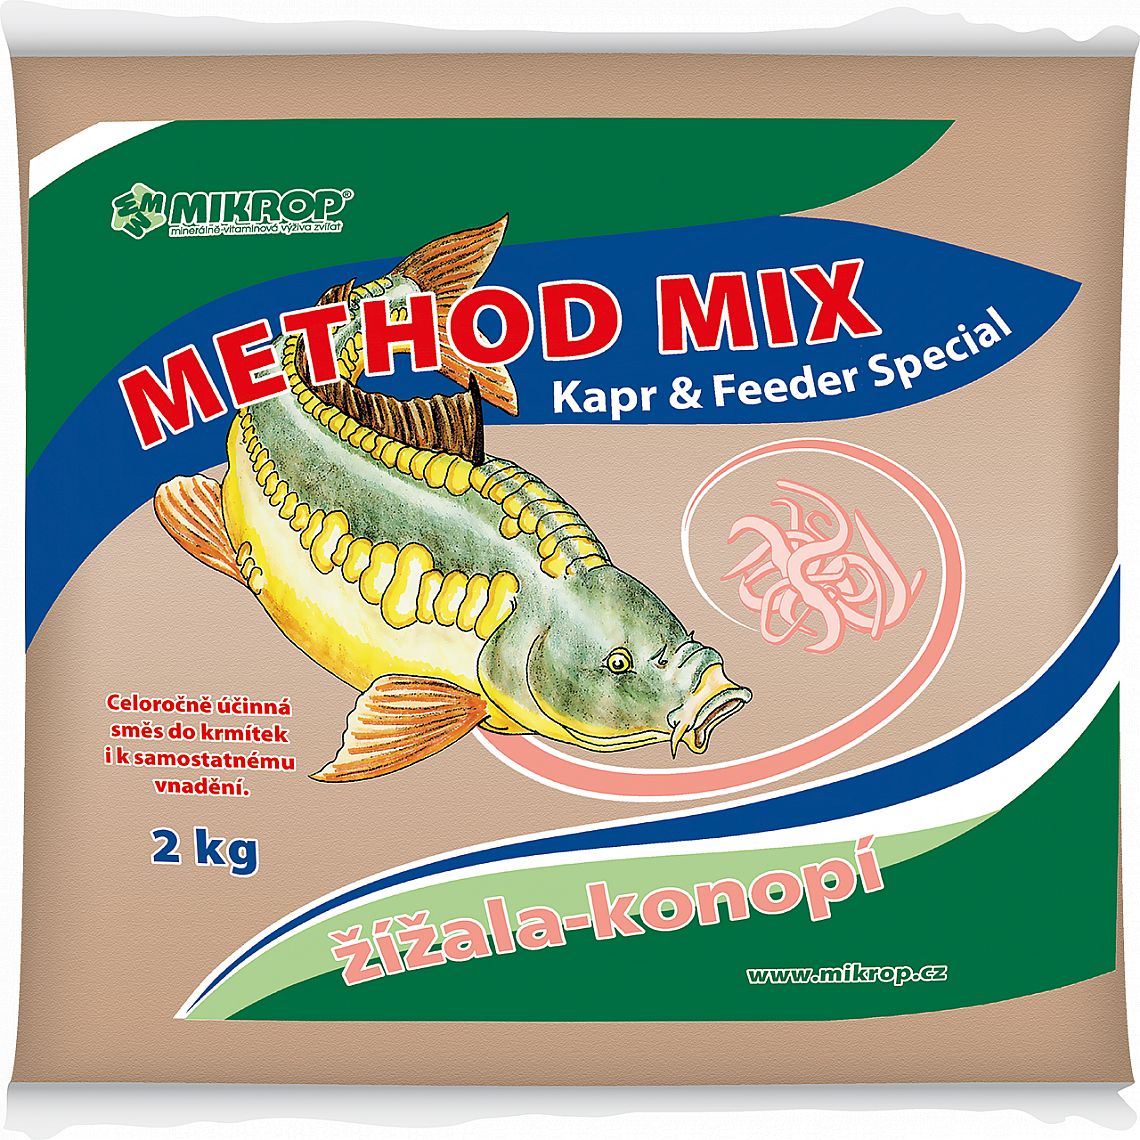 Mikrop Method mix 2kg žížala-konopí krmítková směs